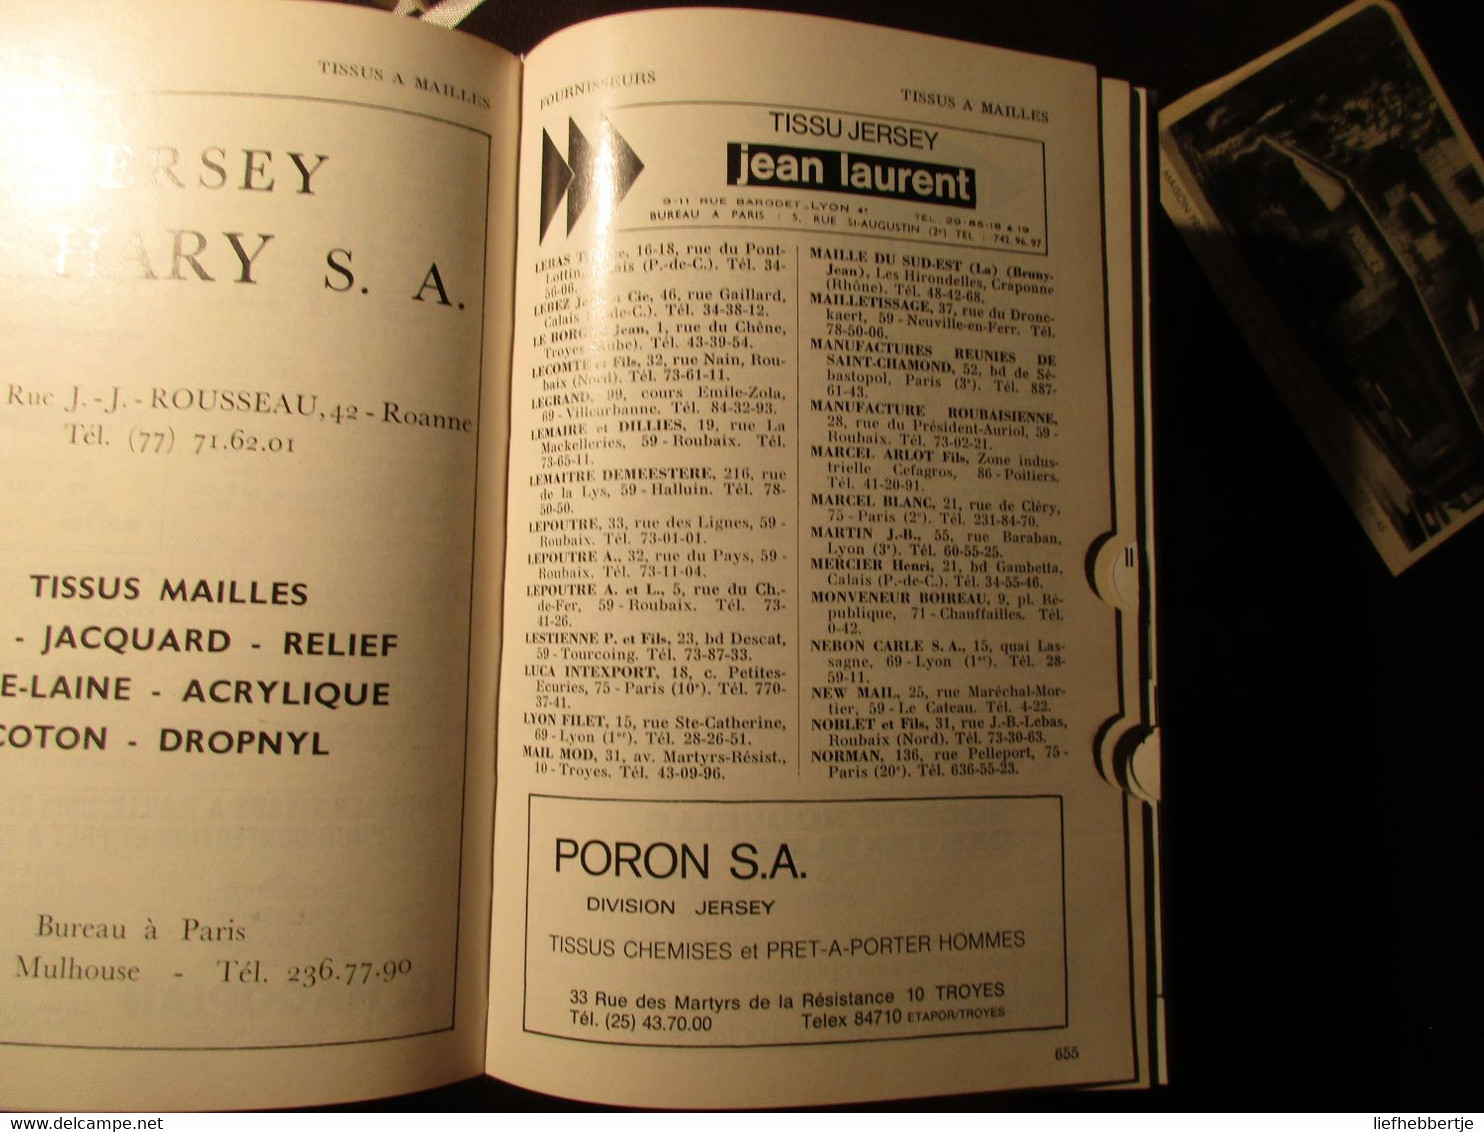 Annuaire Professionnel Du Prêt à Porter 1972 - France - Fabricants Confections Chemiserie Bonneterie Lingerie - Antique